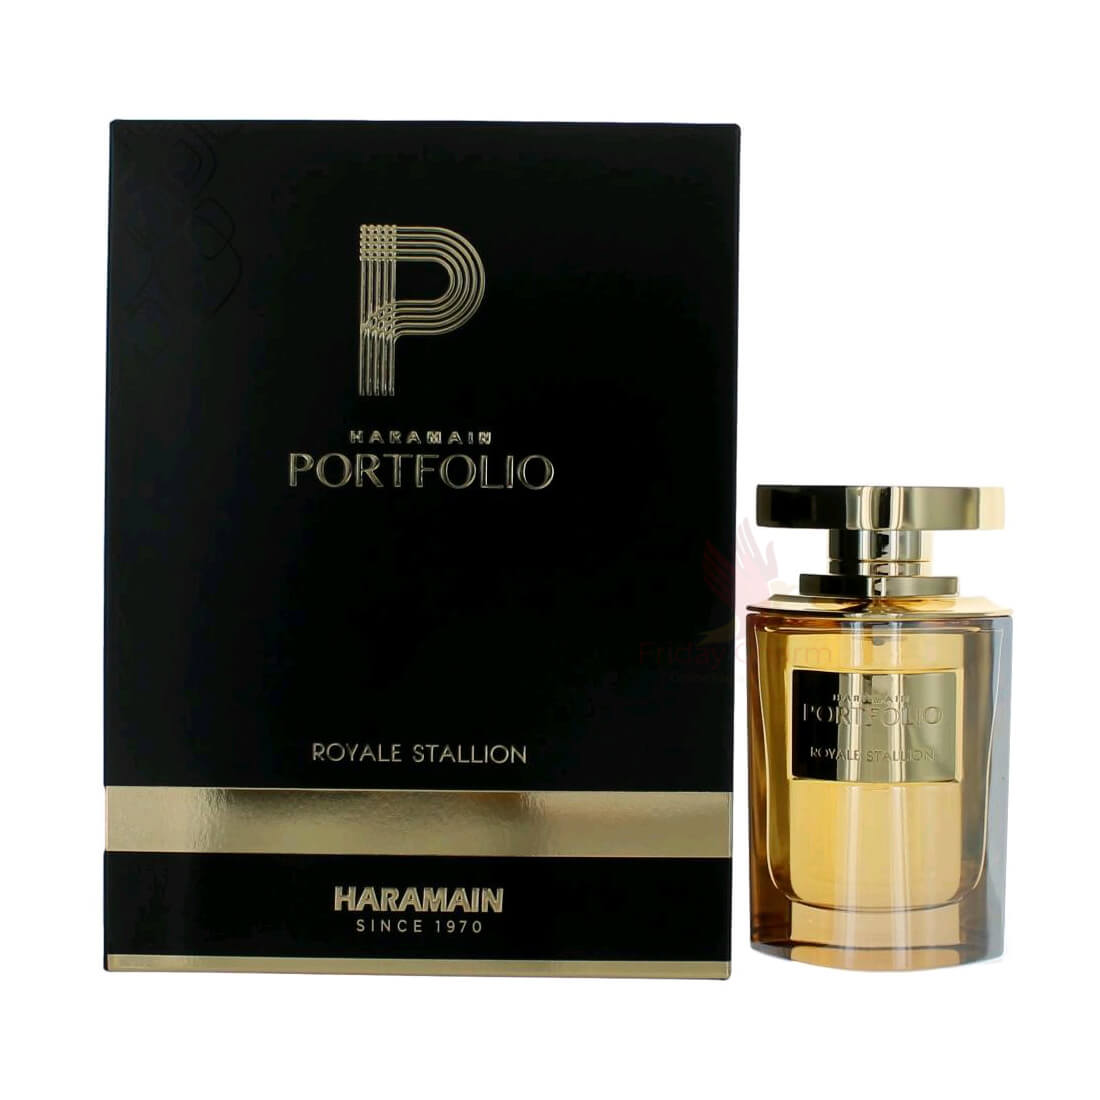 Al Haramain Portfolio Royale Stallion Eau De Perfume Spray - 75ml